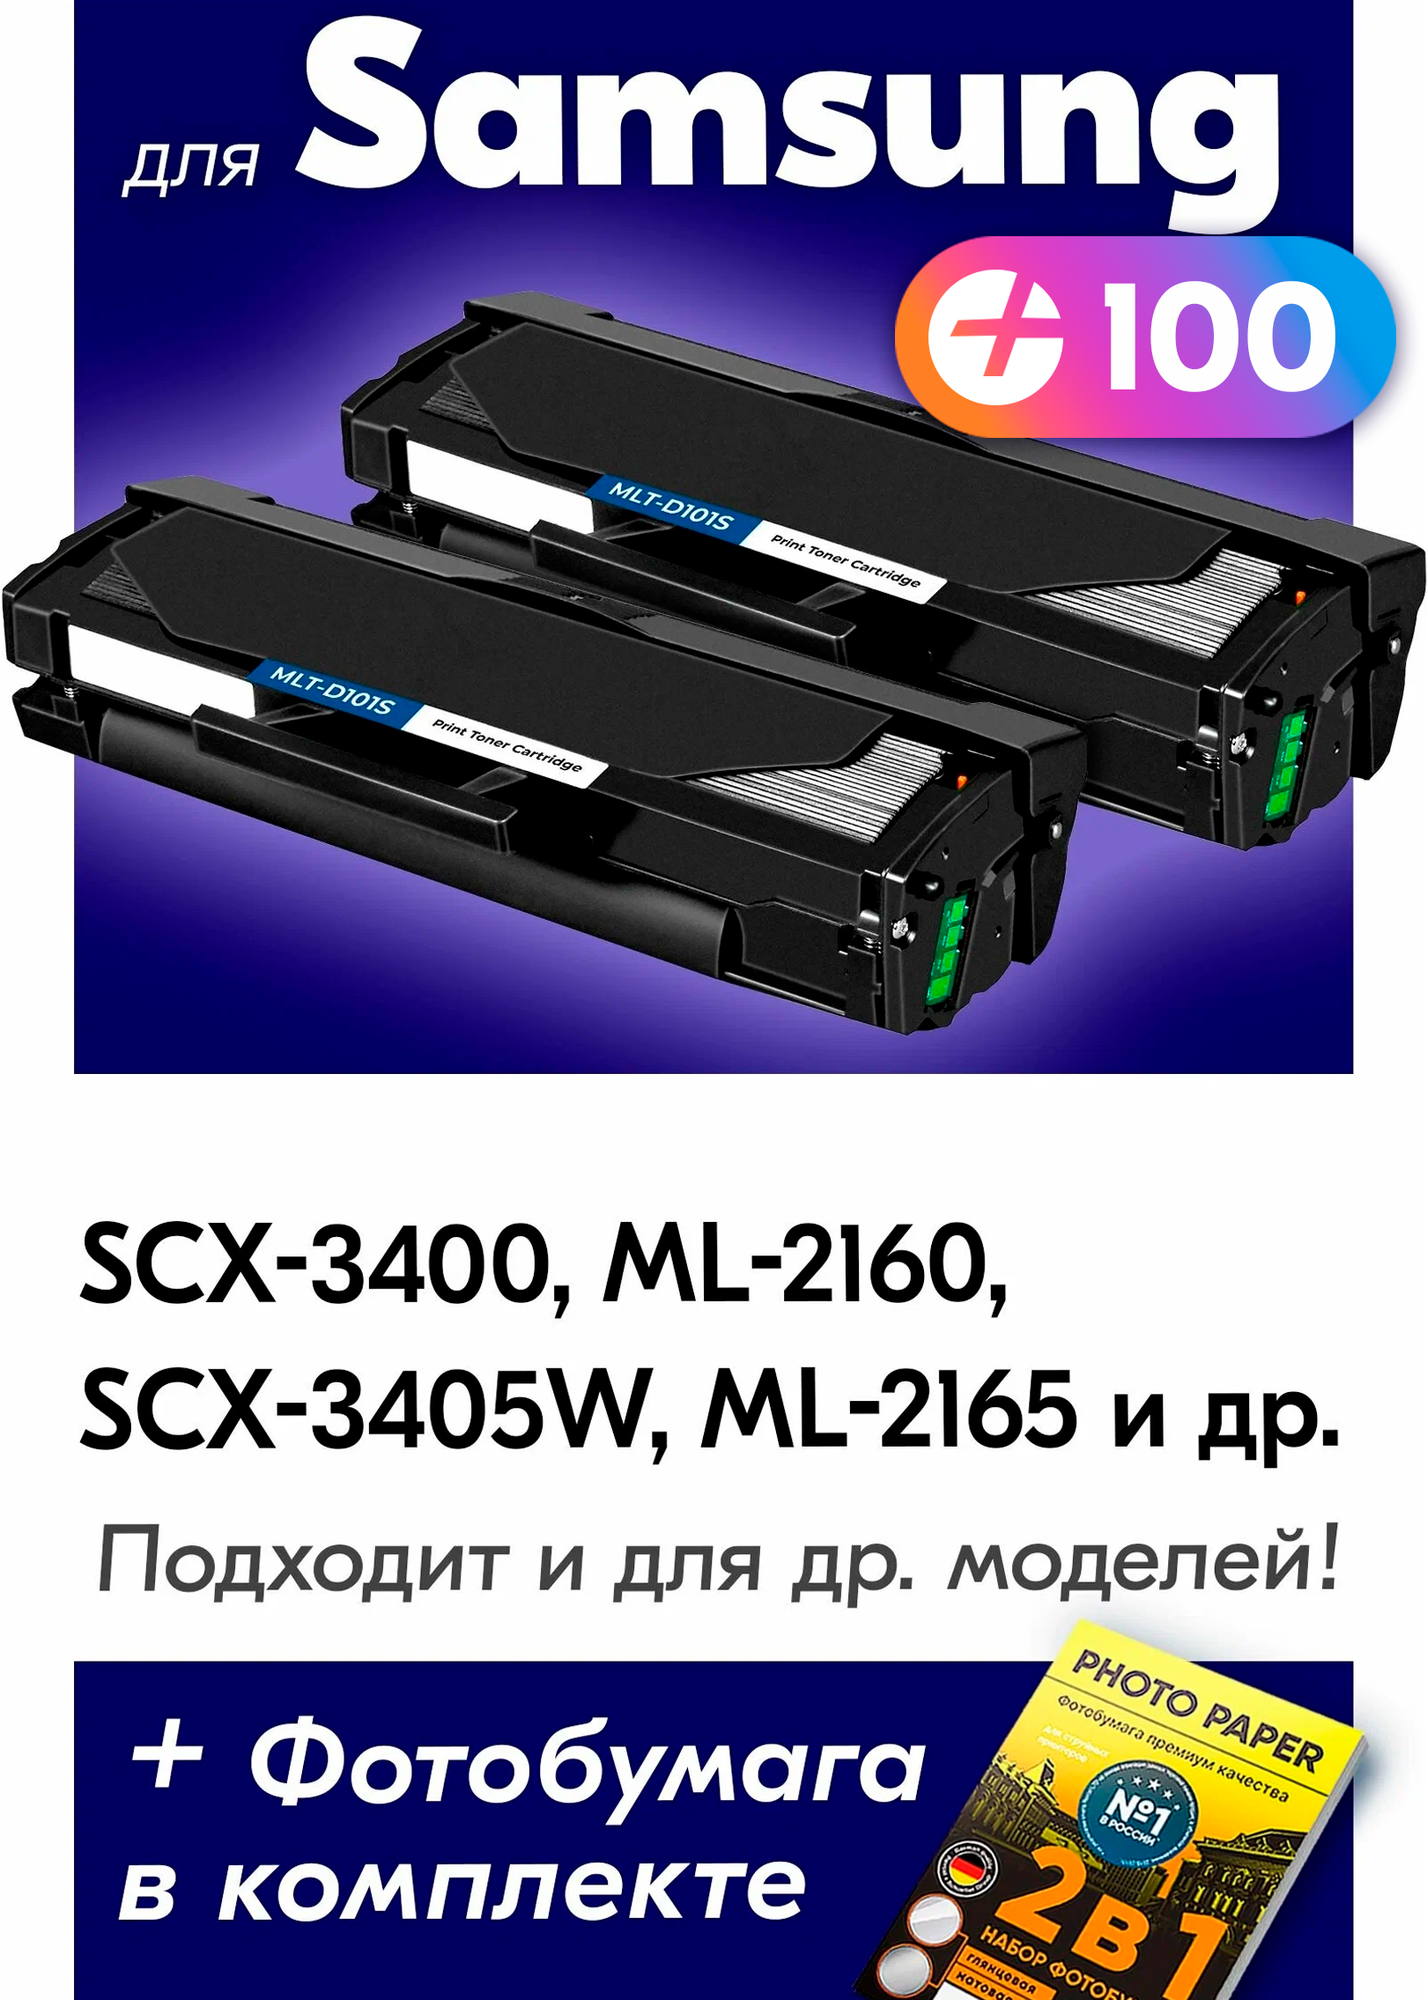 Лазерные картриджи для Samsung MLT-D101S, Samsung SCX-3400, ML-2160, SCX-3405W с краской (тонером) черные новые заправляемые, 1500 копий